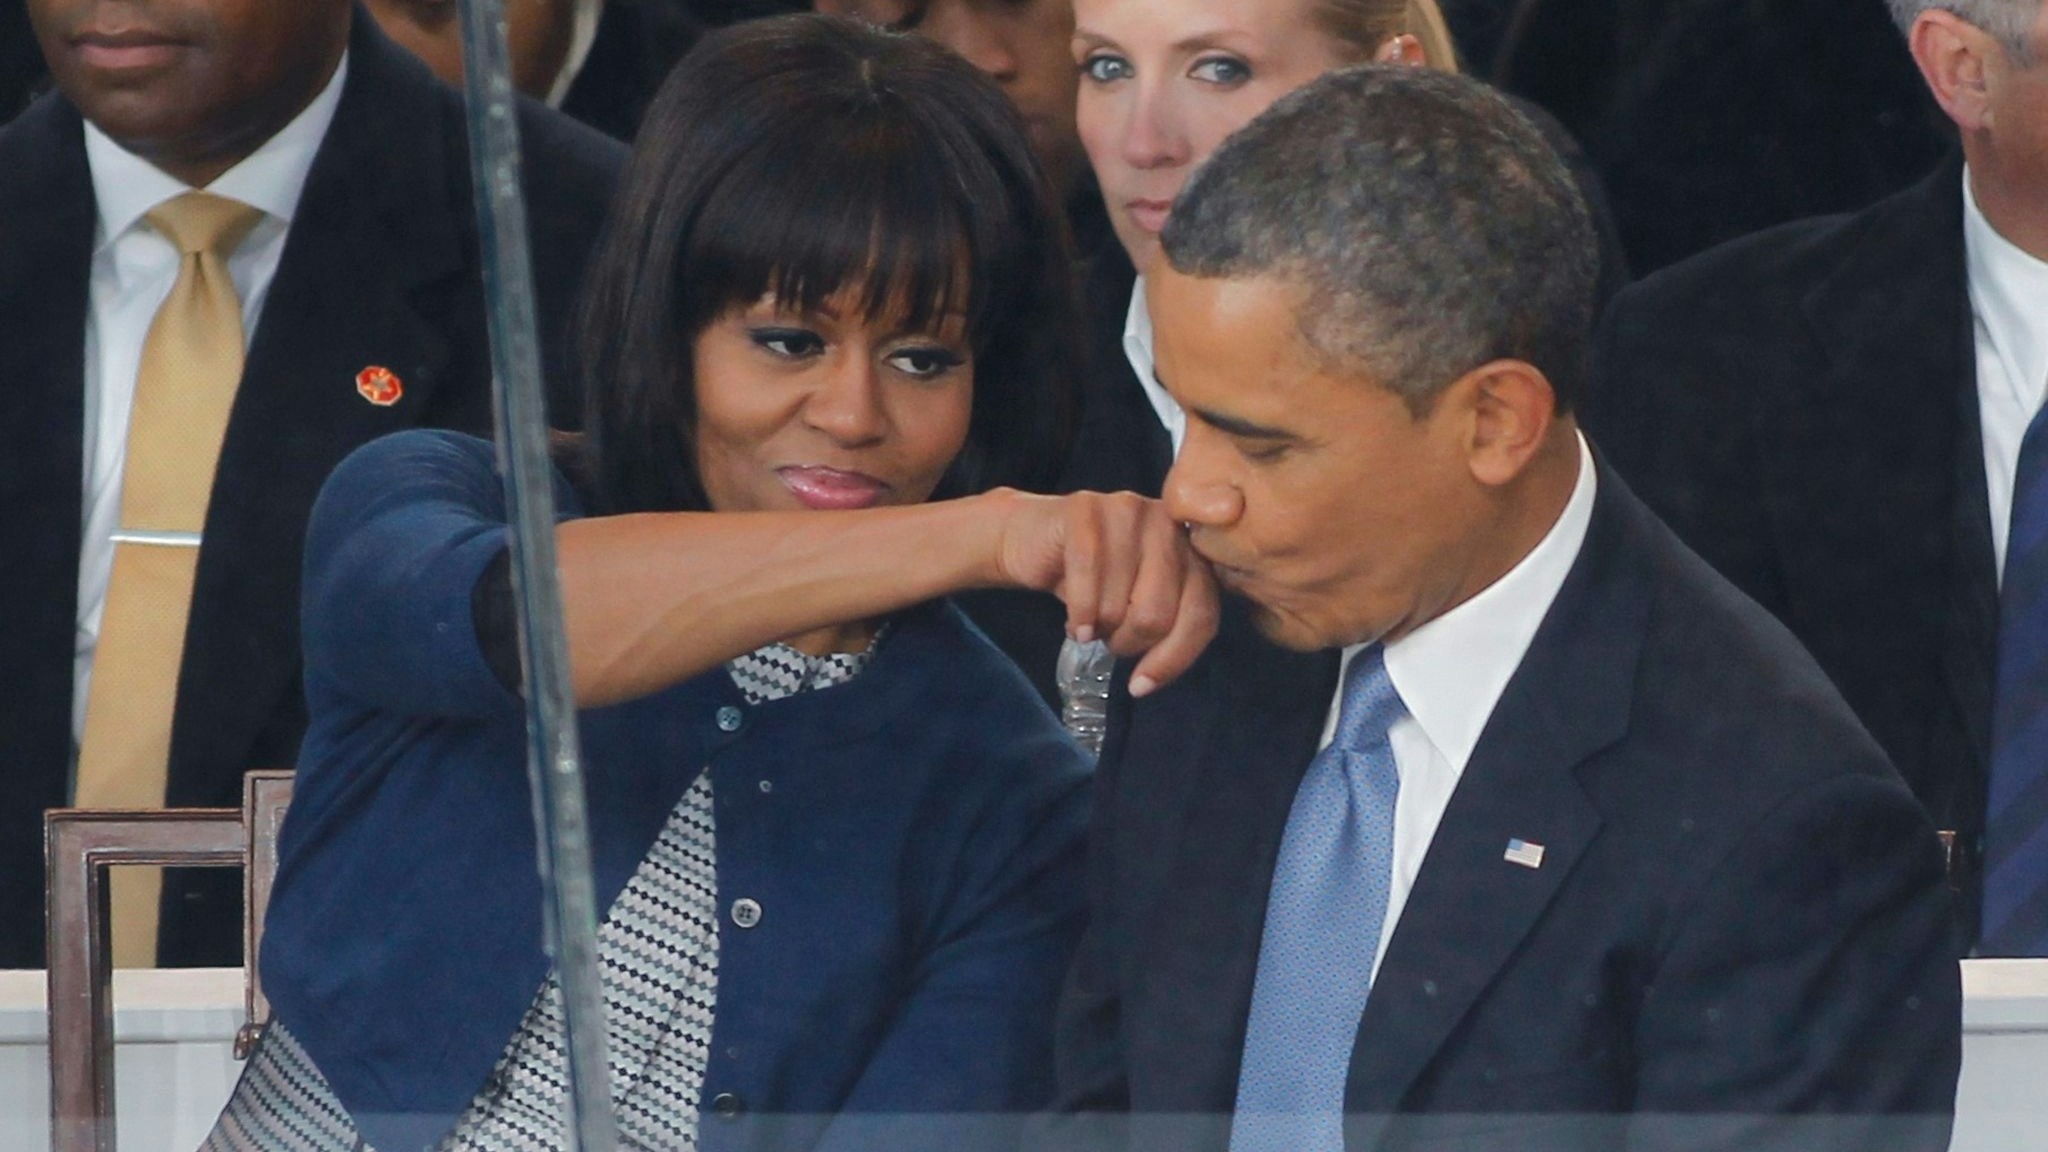 Etwas förmlich: US-Präsident Barack Obama beim Handkuss für Ehefrau Michelle Obama bei der Amtseinführung am 21. Jänner 2013